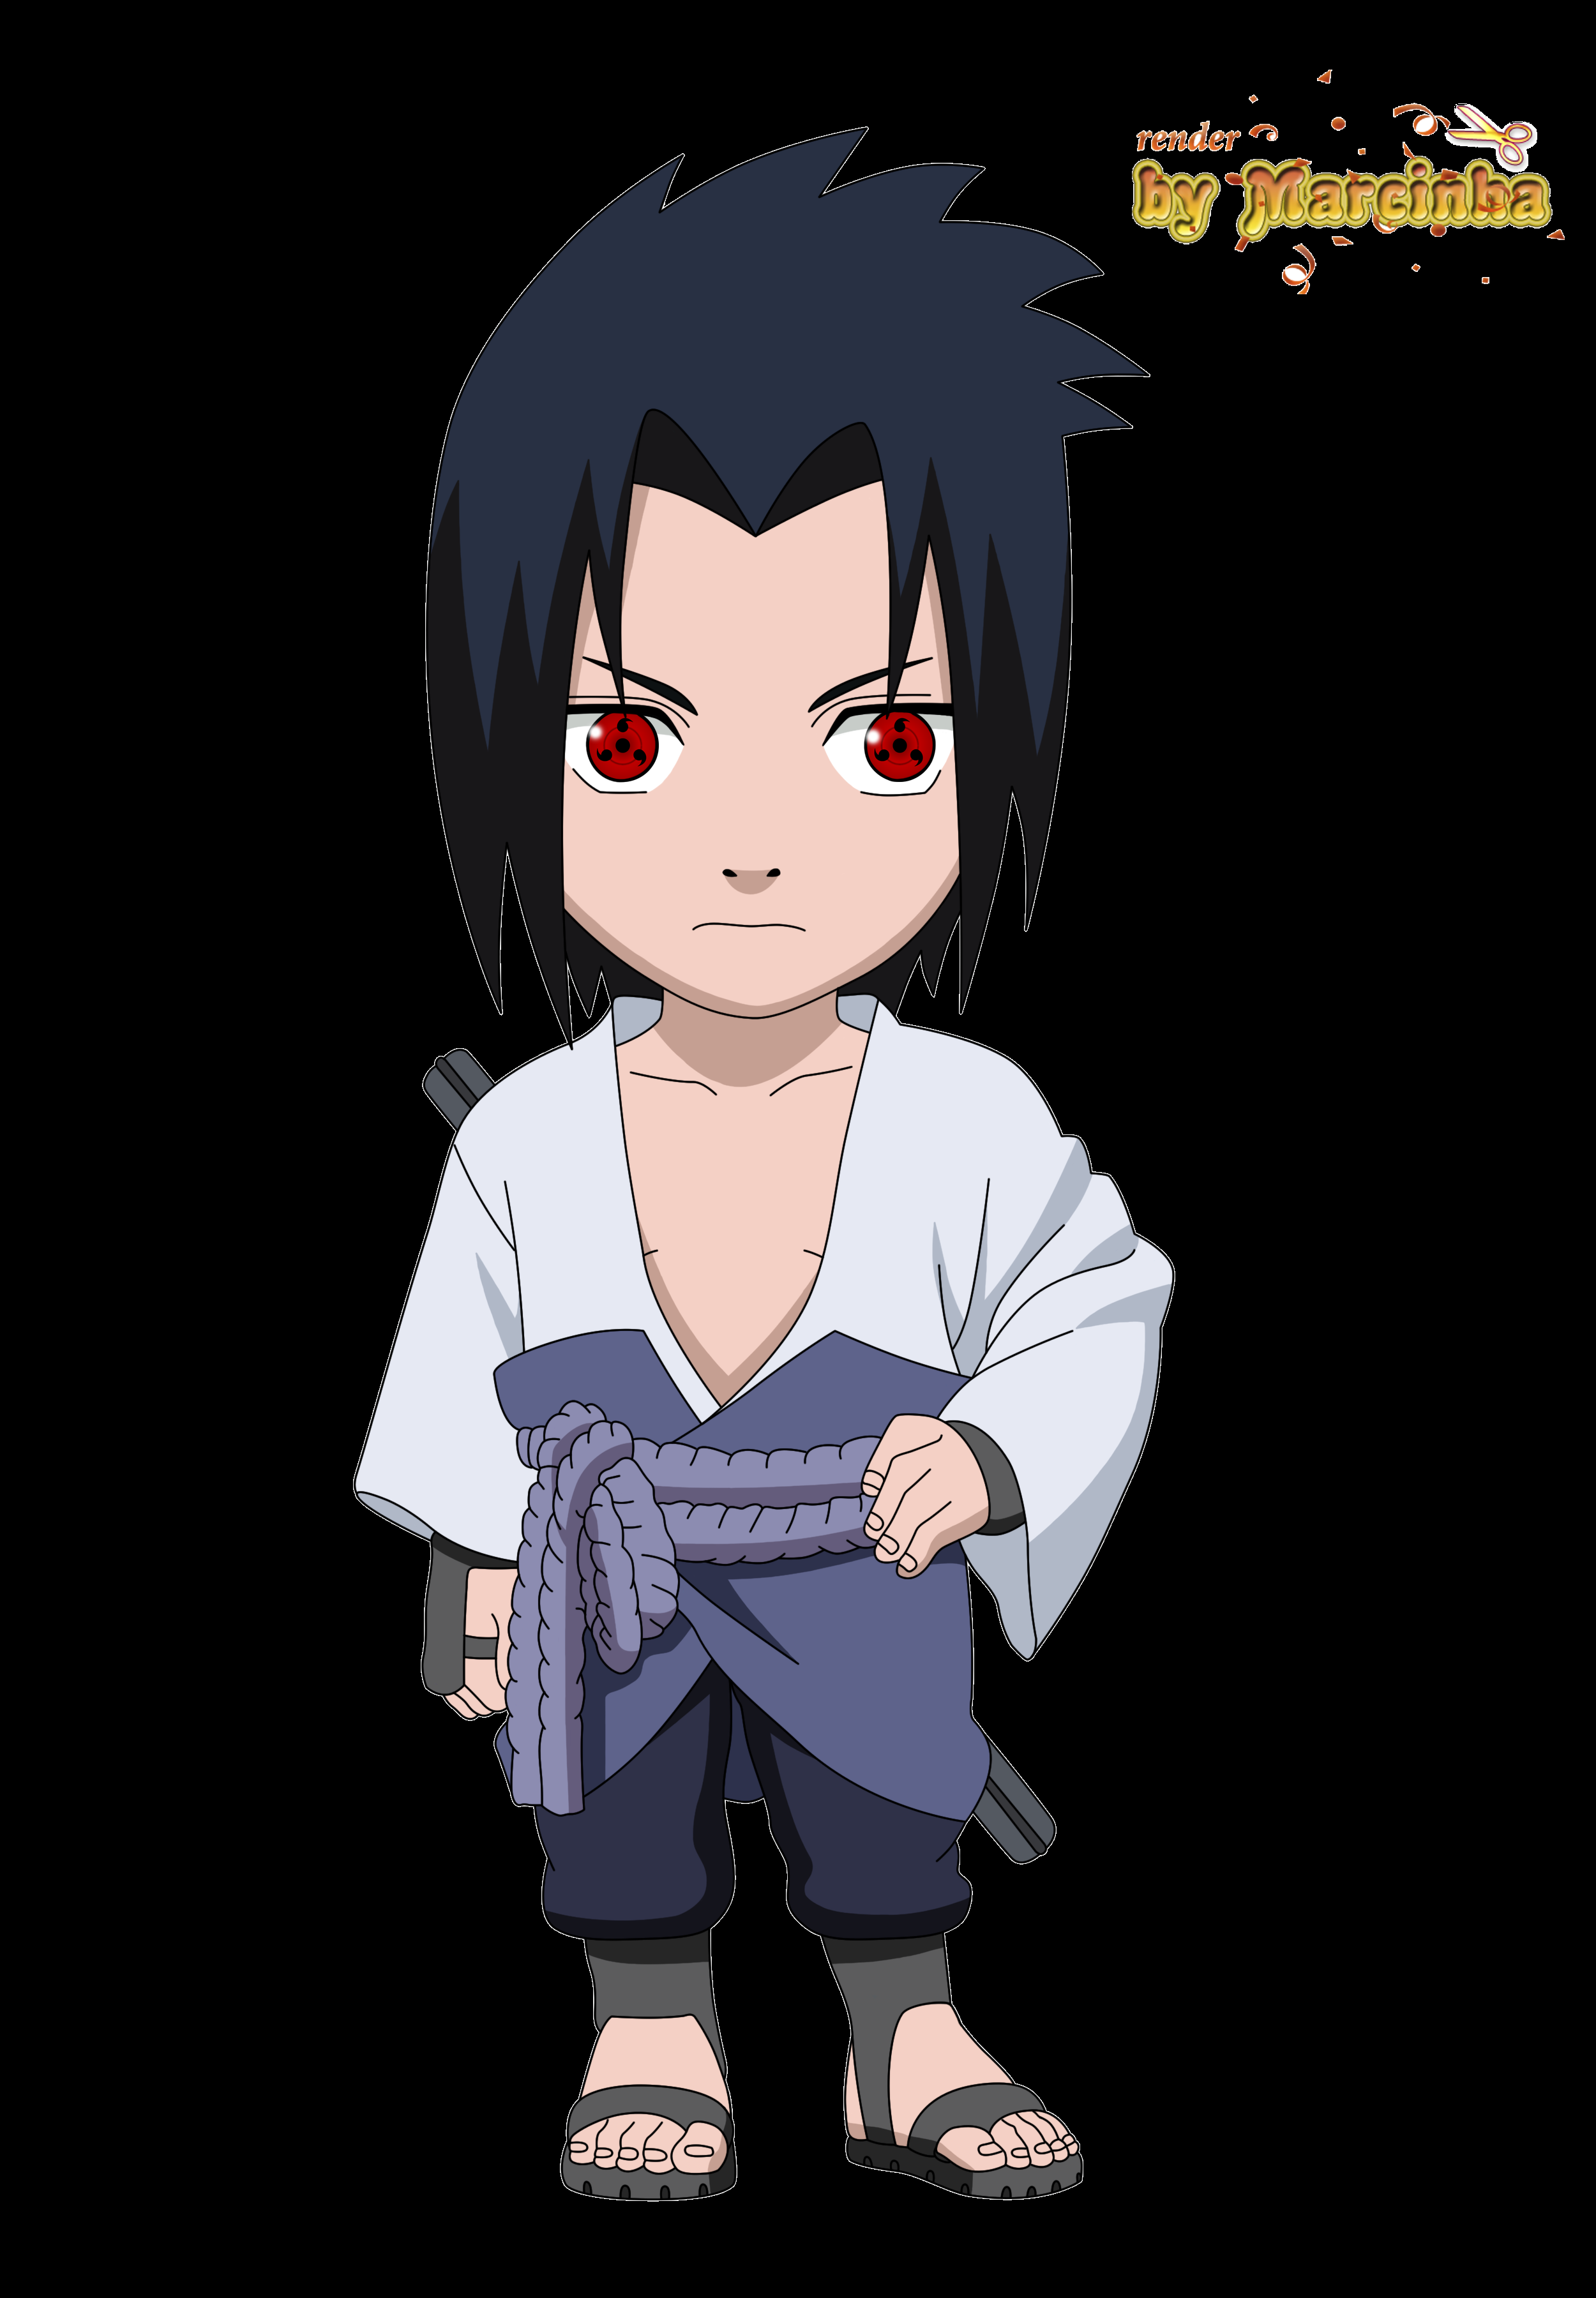 Hãy tải tập tin Sasuke Chibi để thưởng thức những hình ảnh đáng yêu và dễ thương của Sasuke trong phiên bản Chibi. Bạn sẽ cảm thấy vui vẻ và thỏa mãn khi xem chú người hùng đáng yêu này.